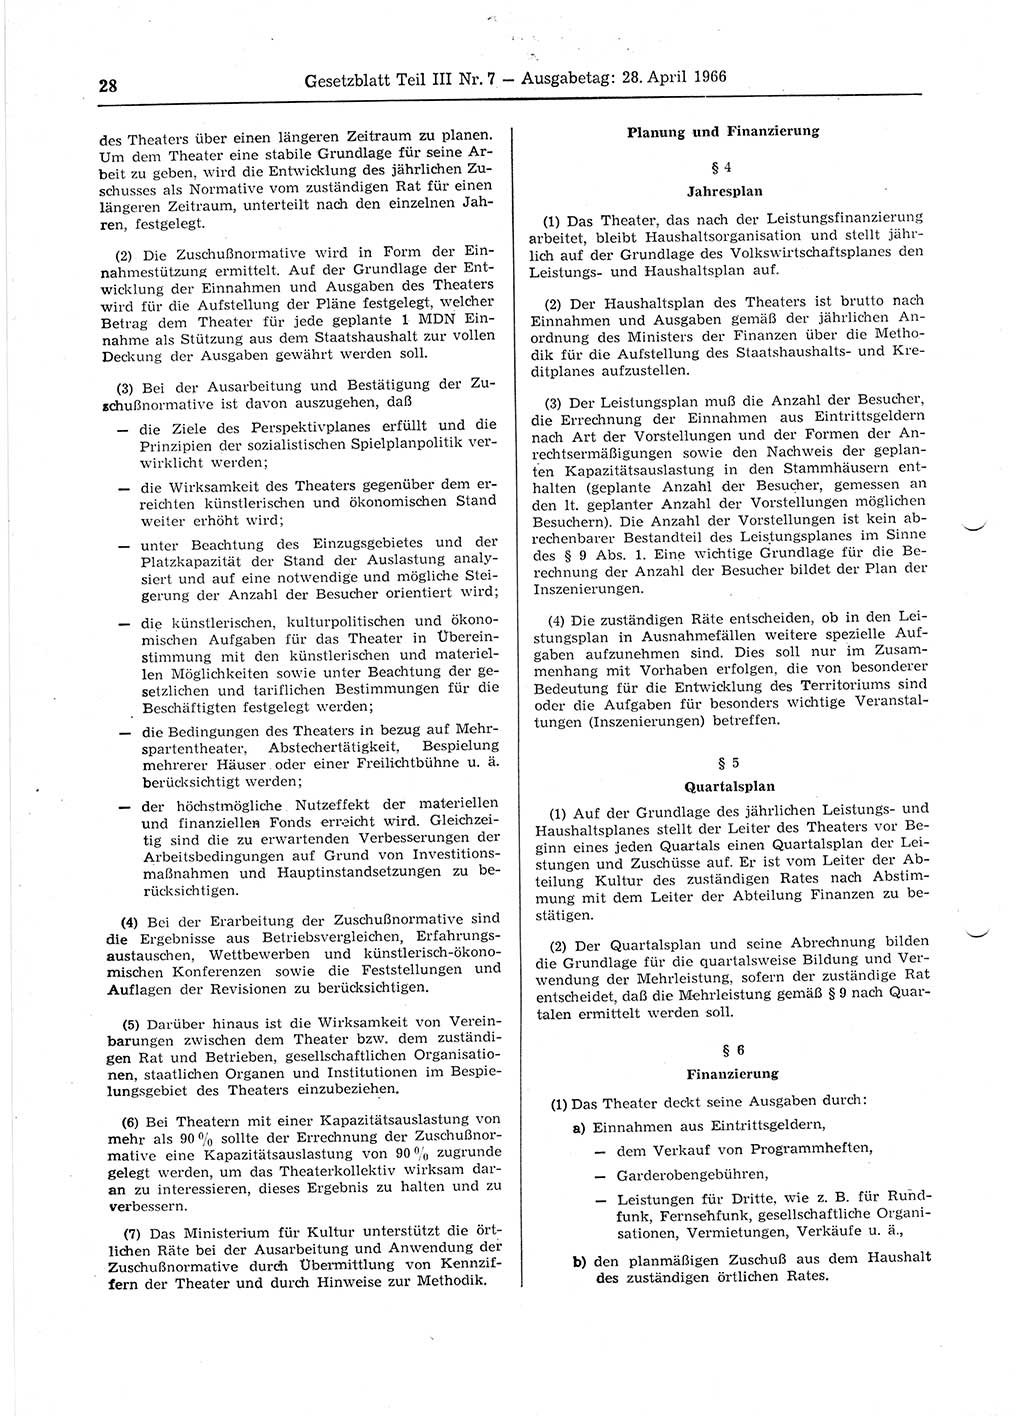 Gesetzblatt (GBl.) der Deutschen Demokratischen Republik (DDR) Teil ⅠⅠⅠ 1966, Seite 28 (GBl. DDR ⅠⅠⅠ 1966, S. 28)